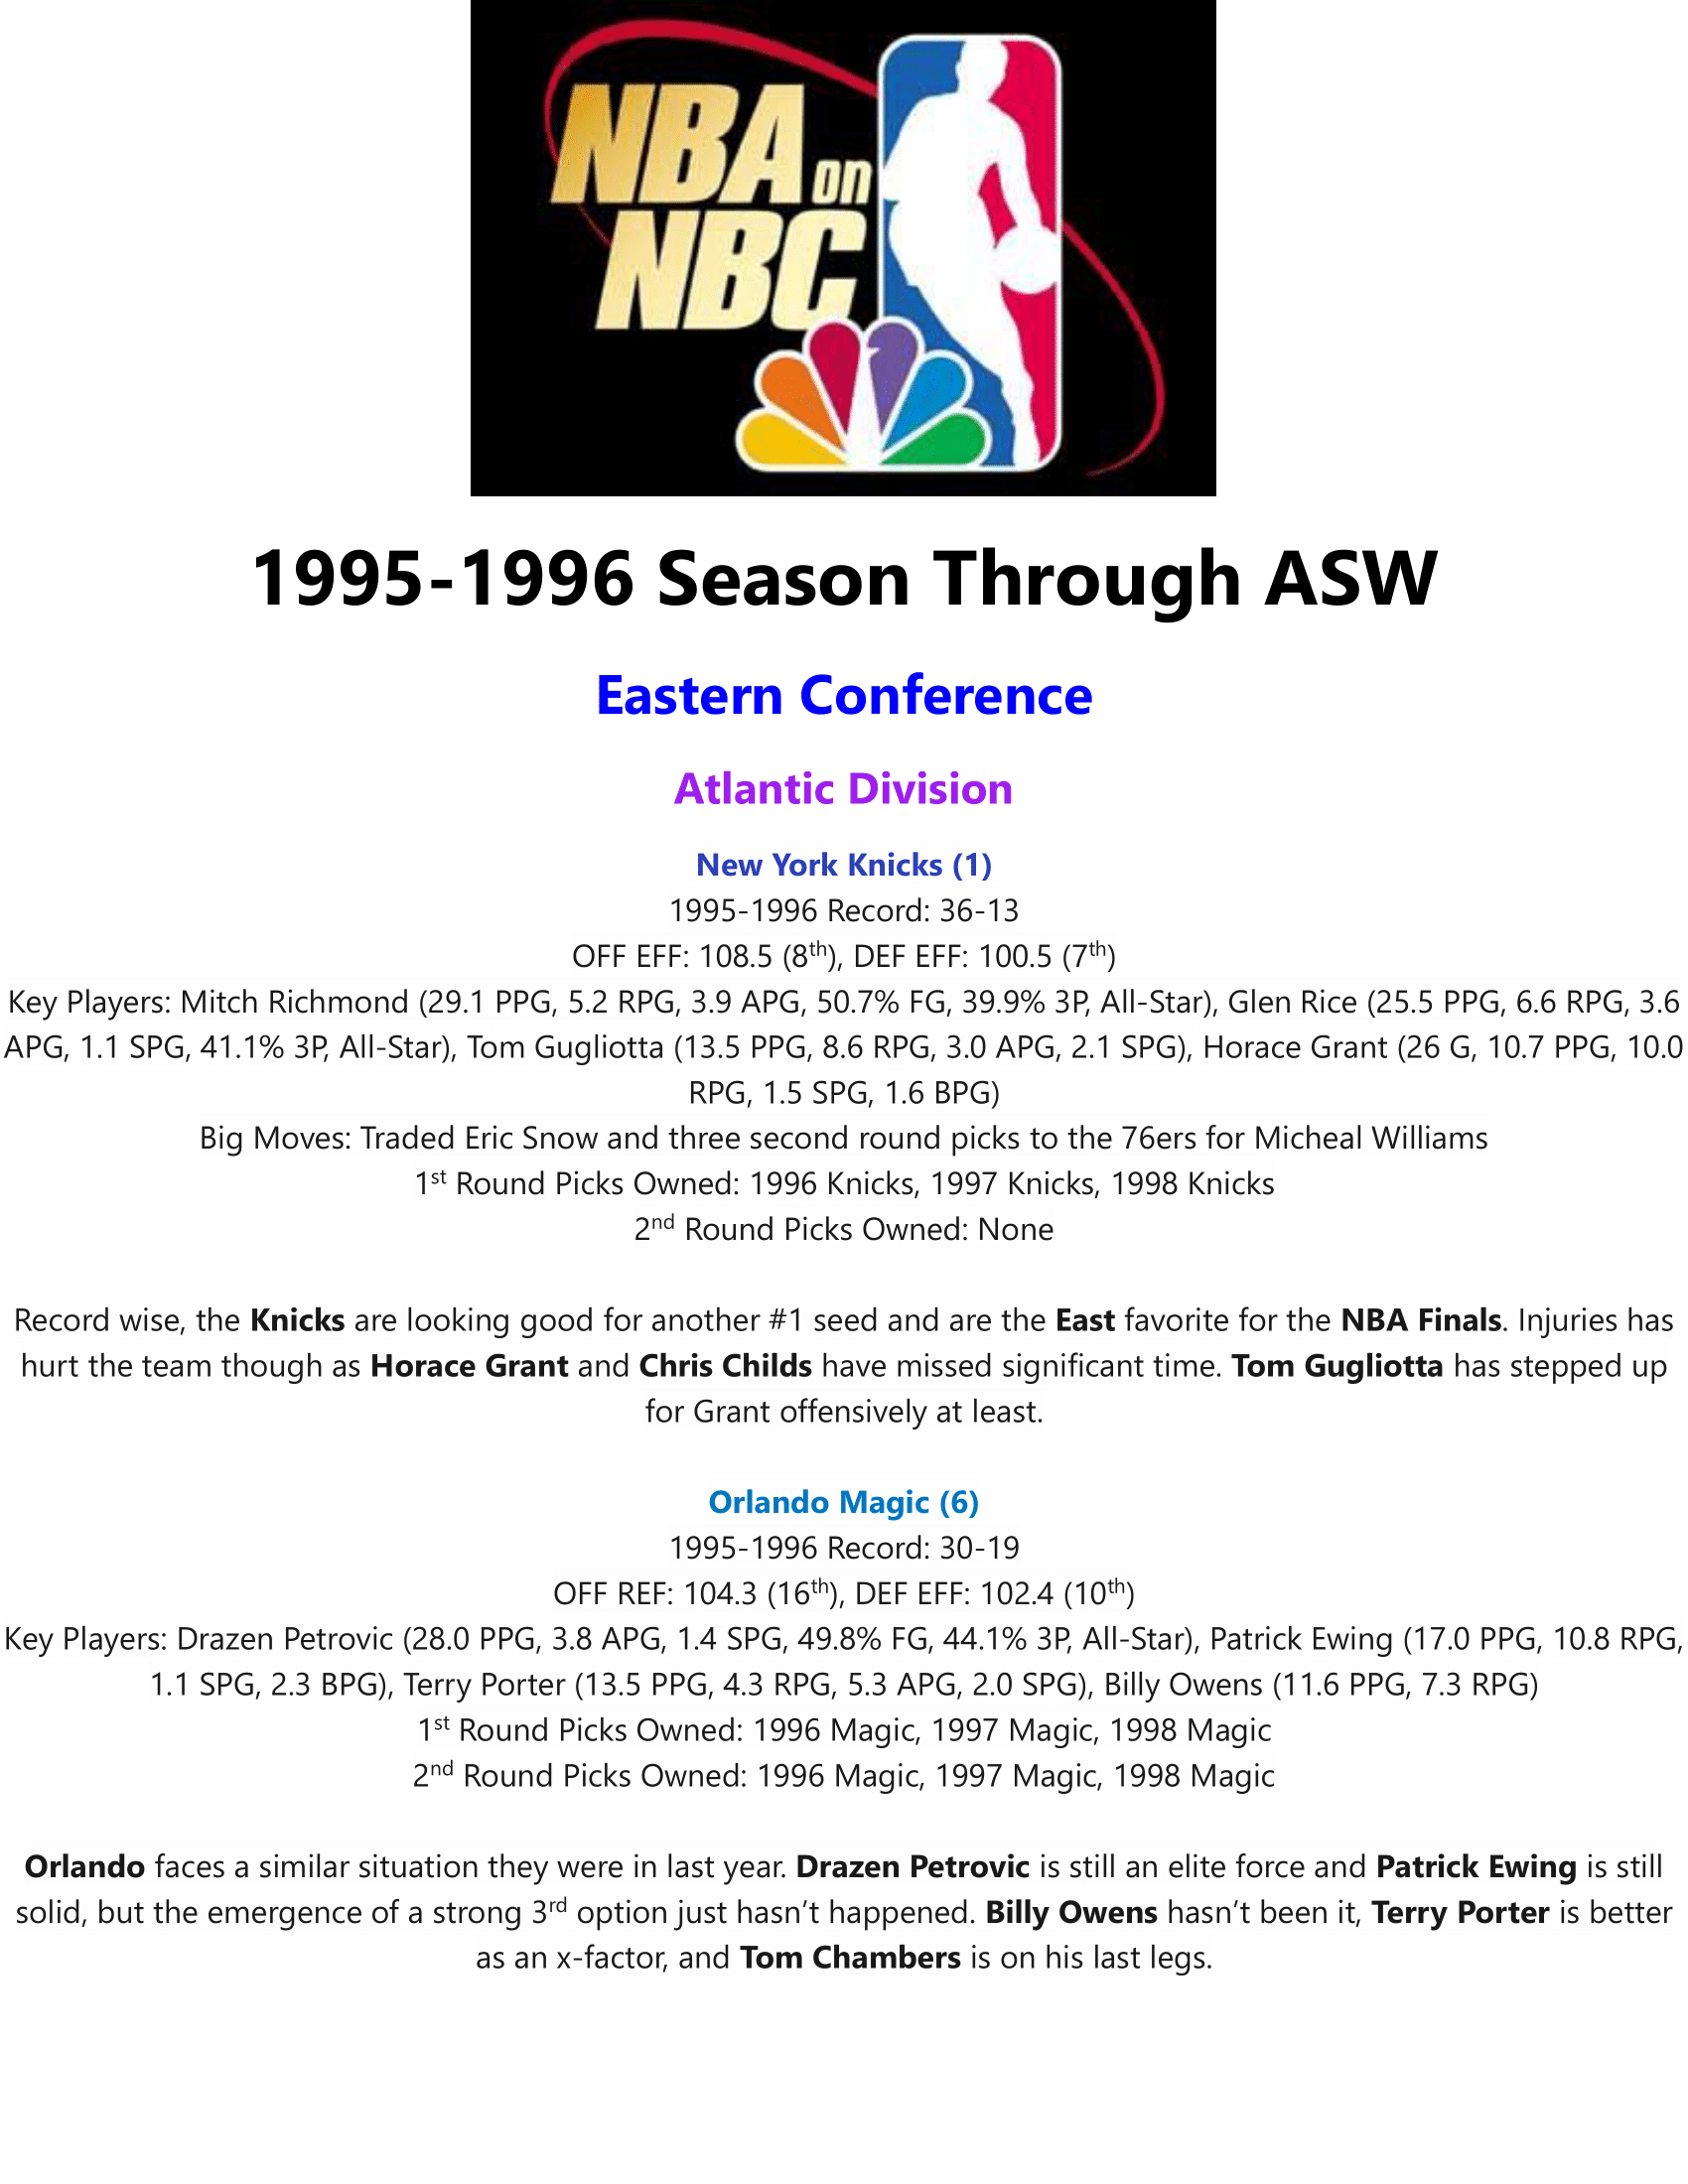 95-96-Part-1-Through-ASW-01.png